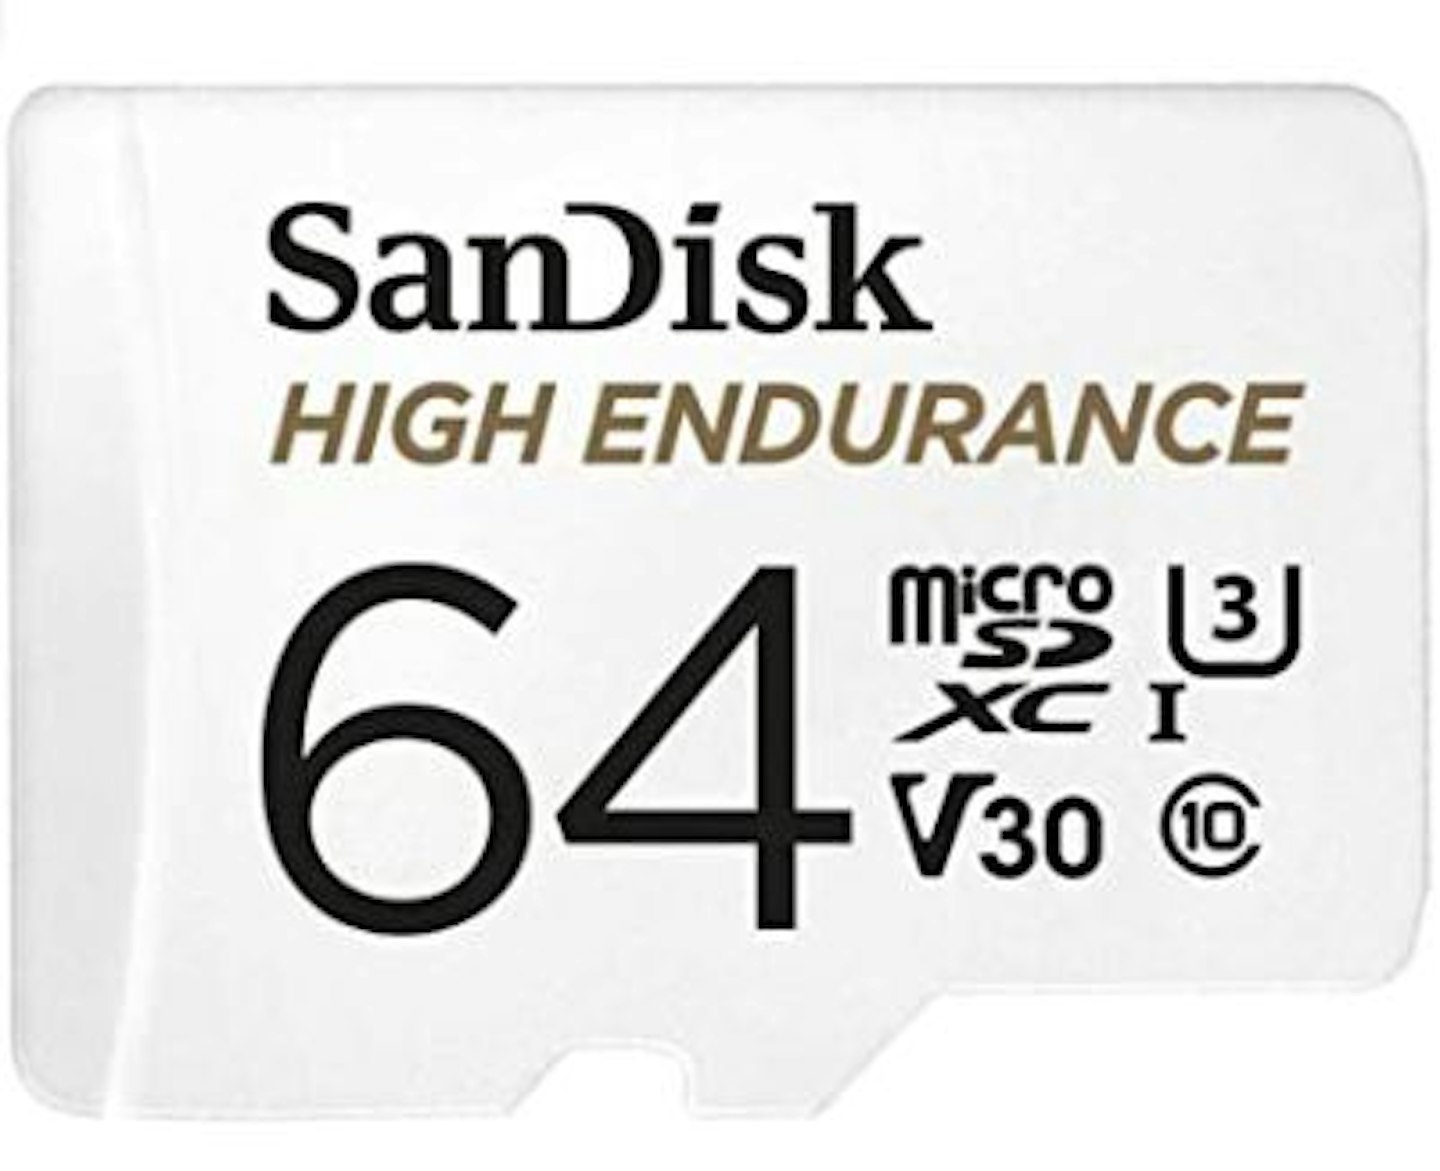 SanDisk High Endurance 128GB